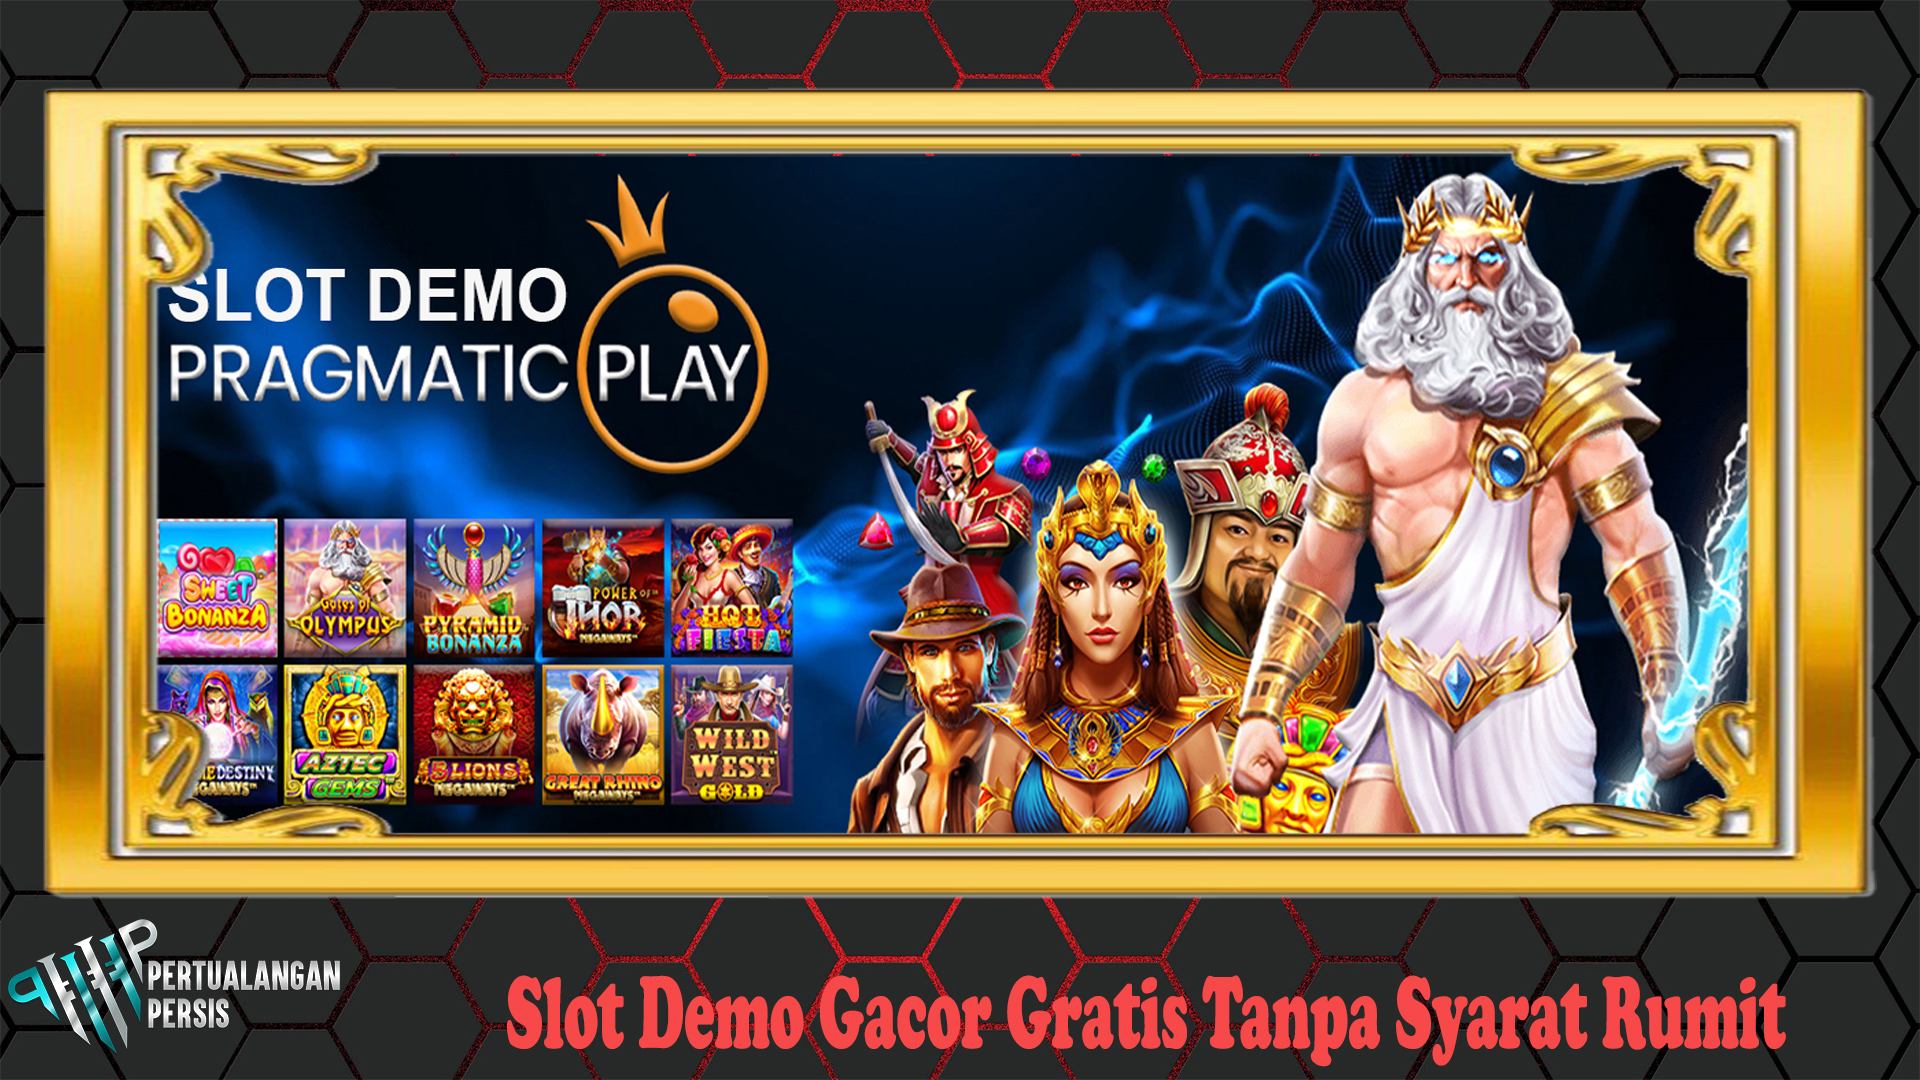 Slot Demo Gacor Gratis Tanpa Syarat Rumit